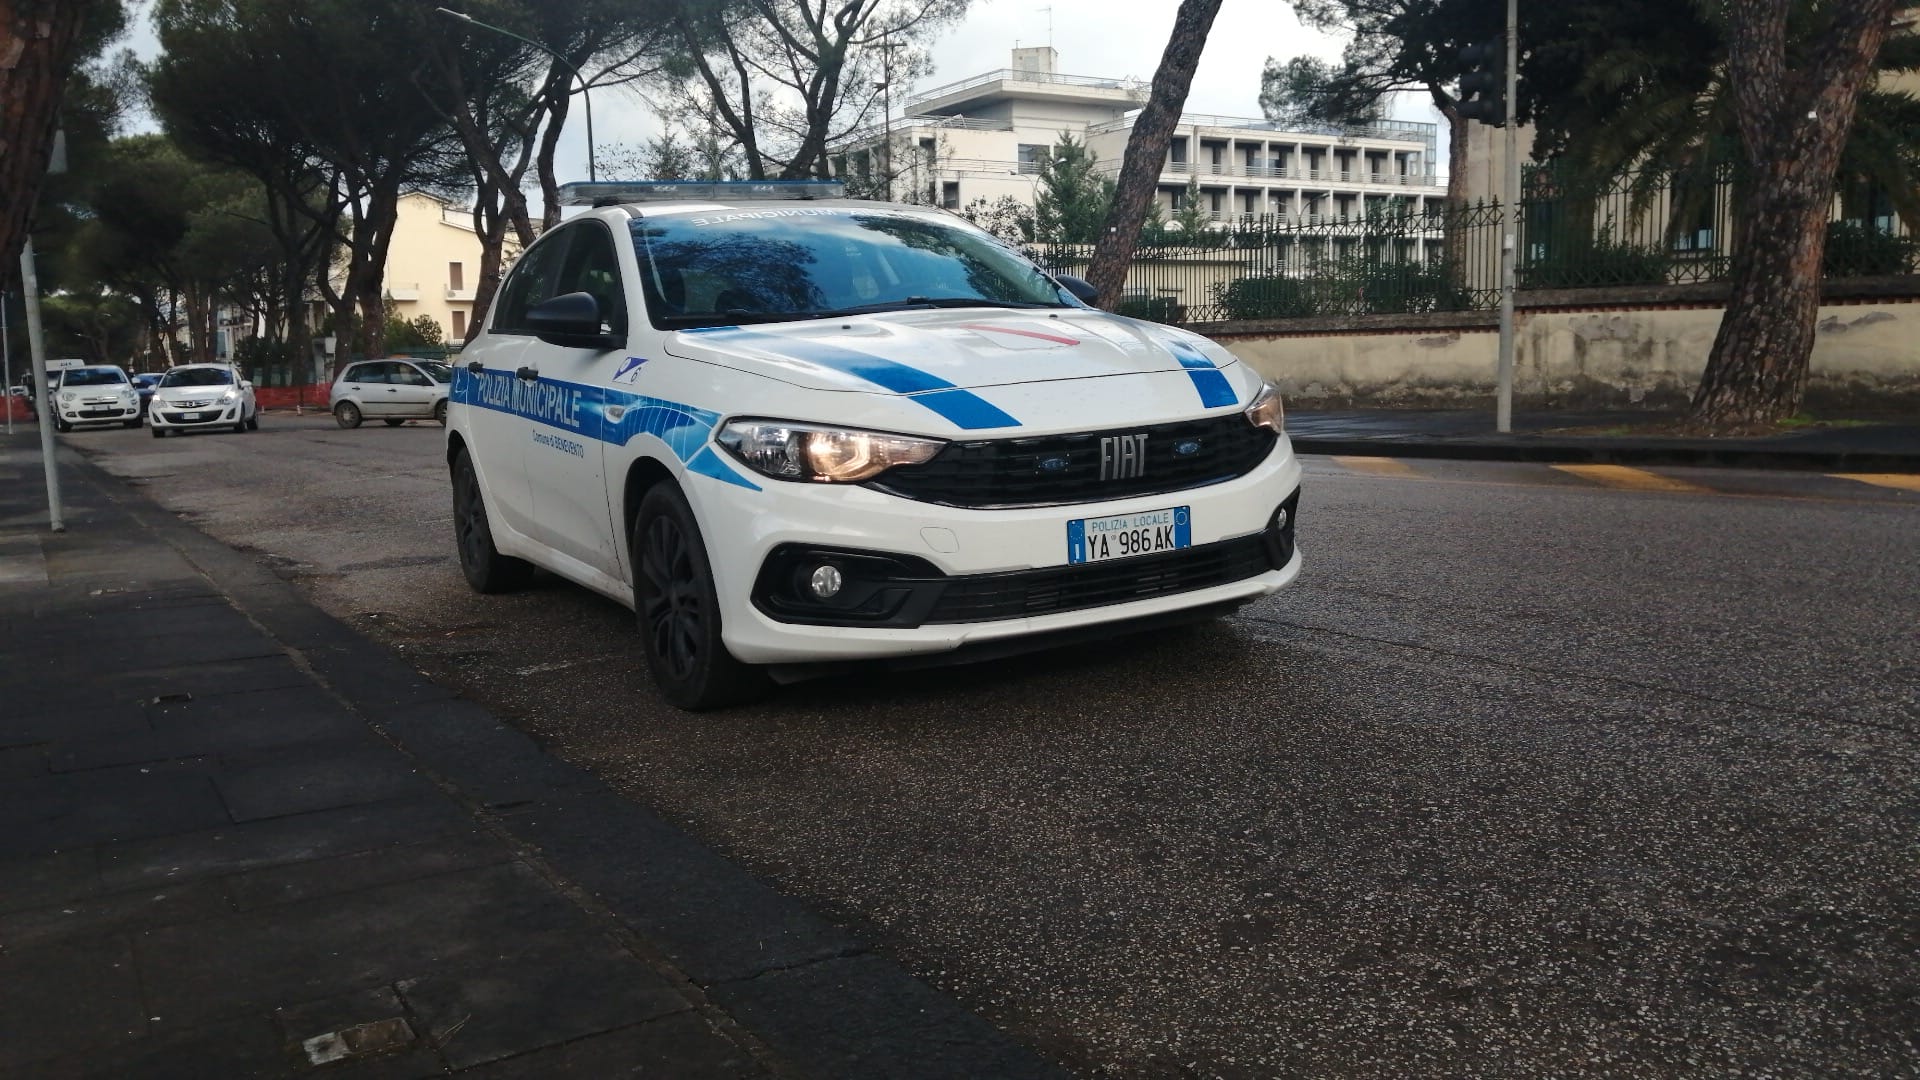 Polizia Municipale, dalla Regione finanziamenti per Avellino e Benevento